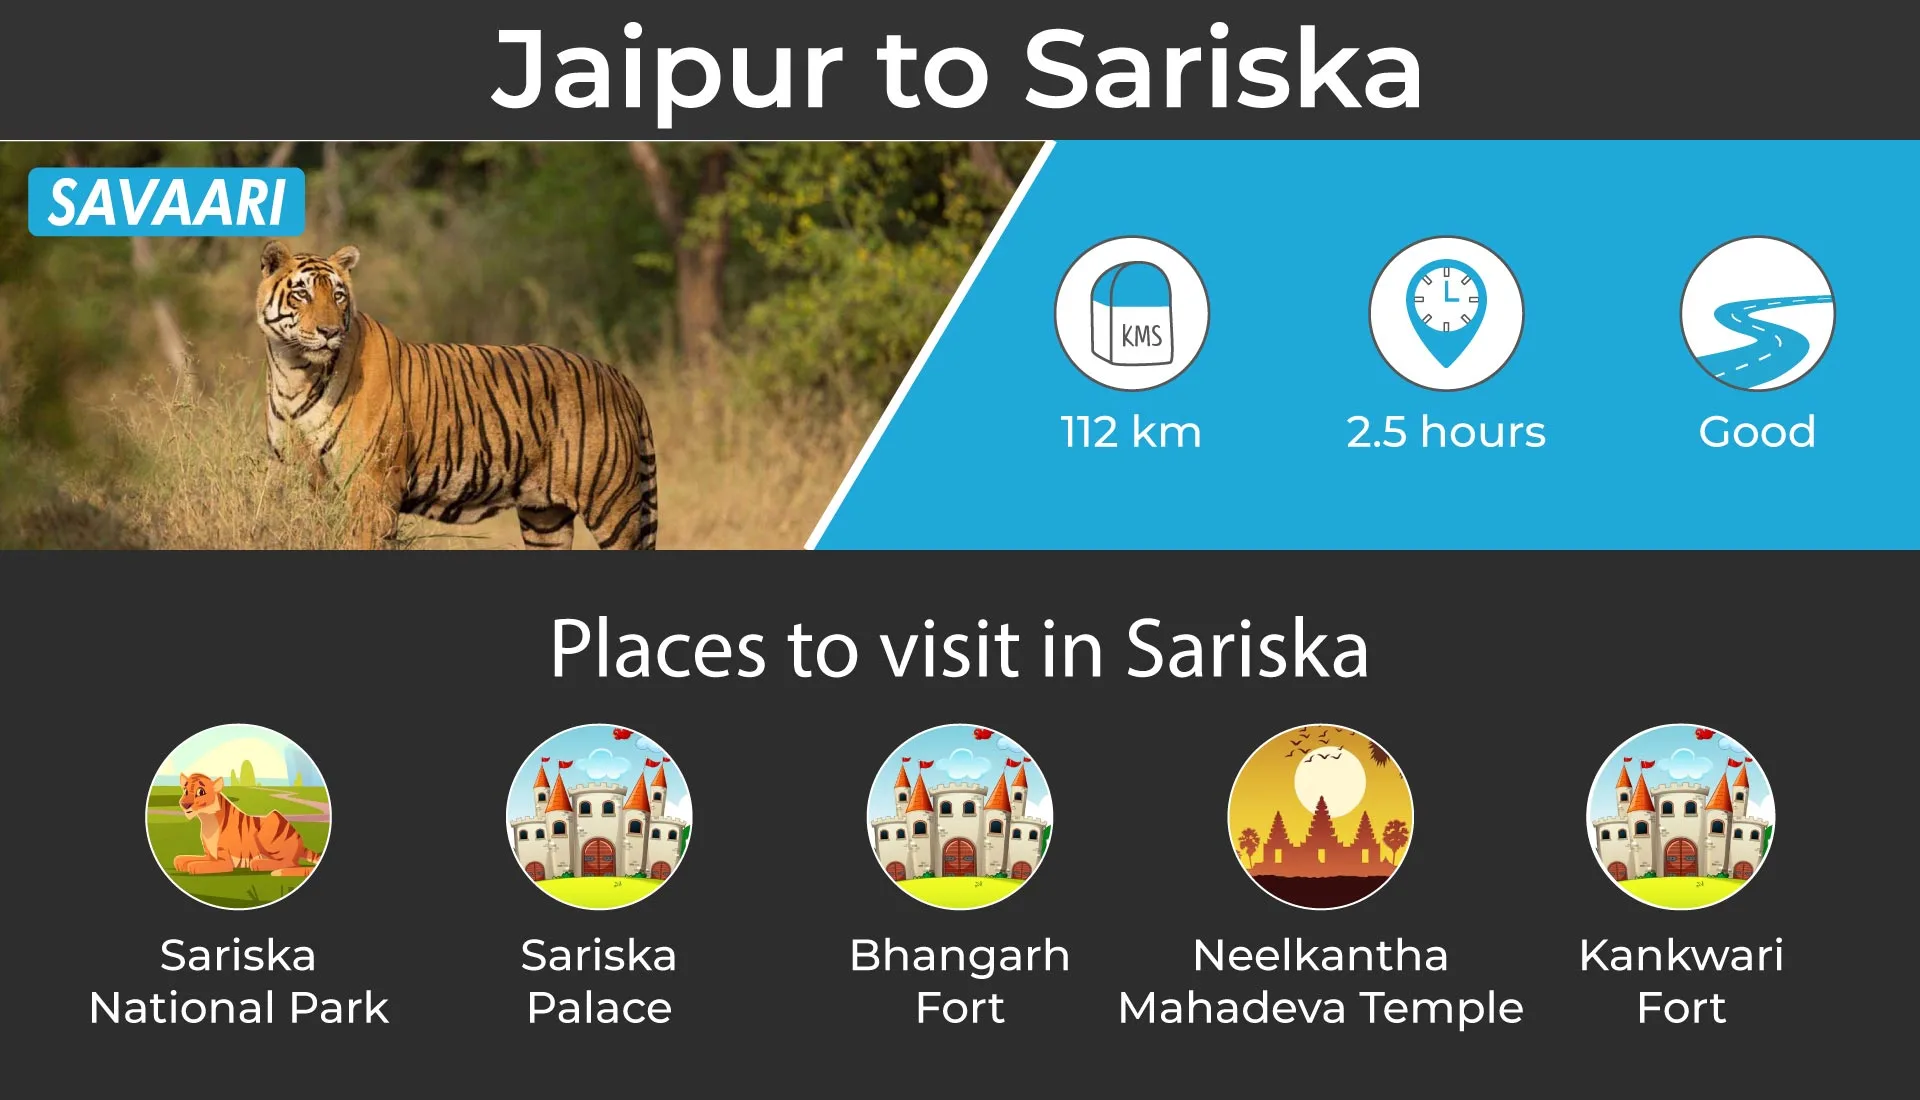 Sarika scenic road trip near Jaipur